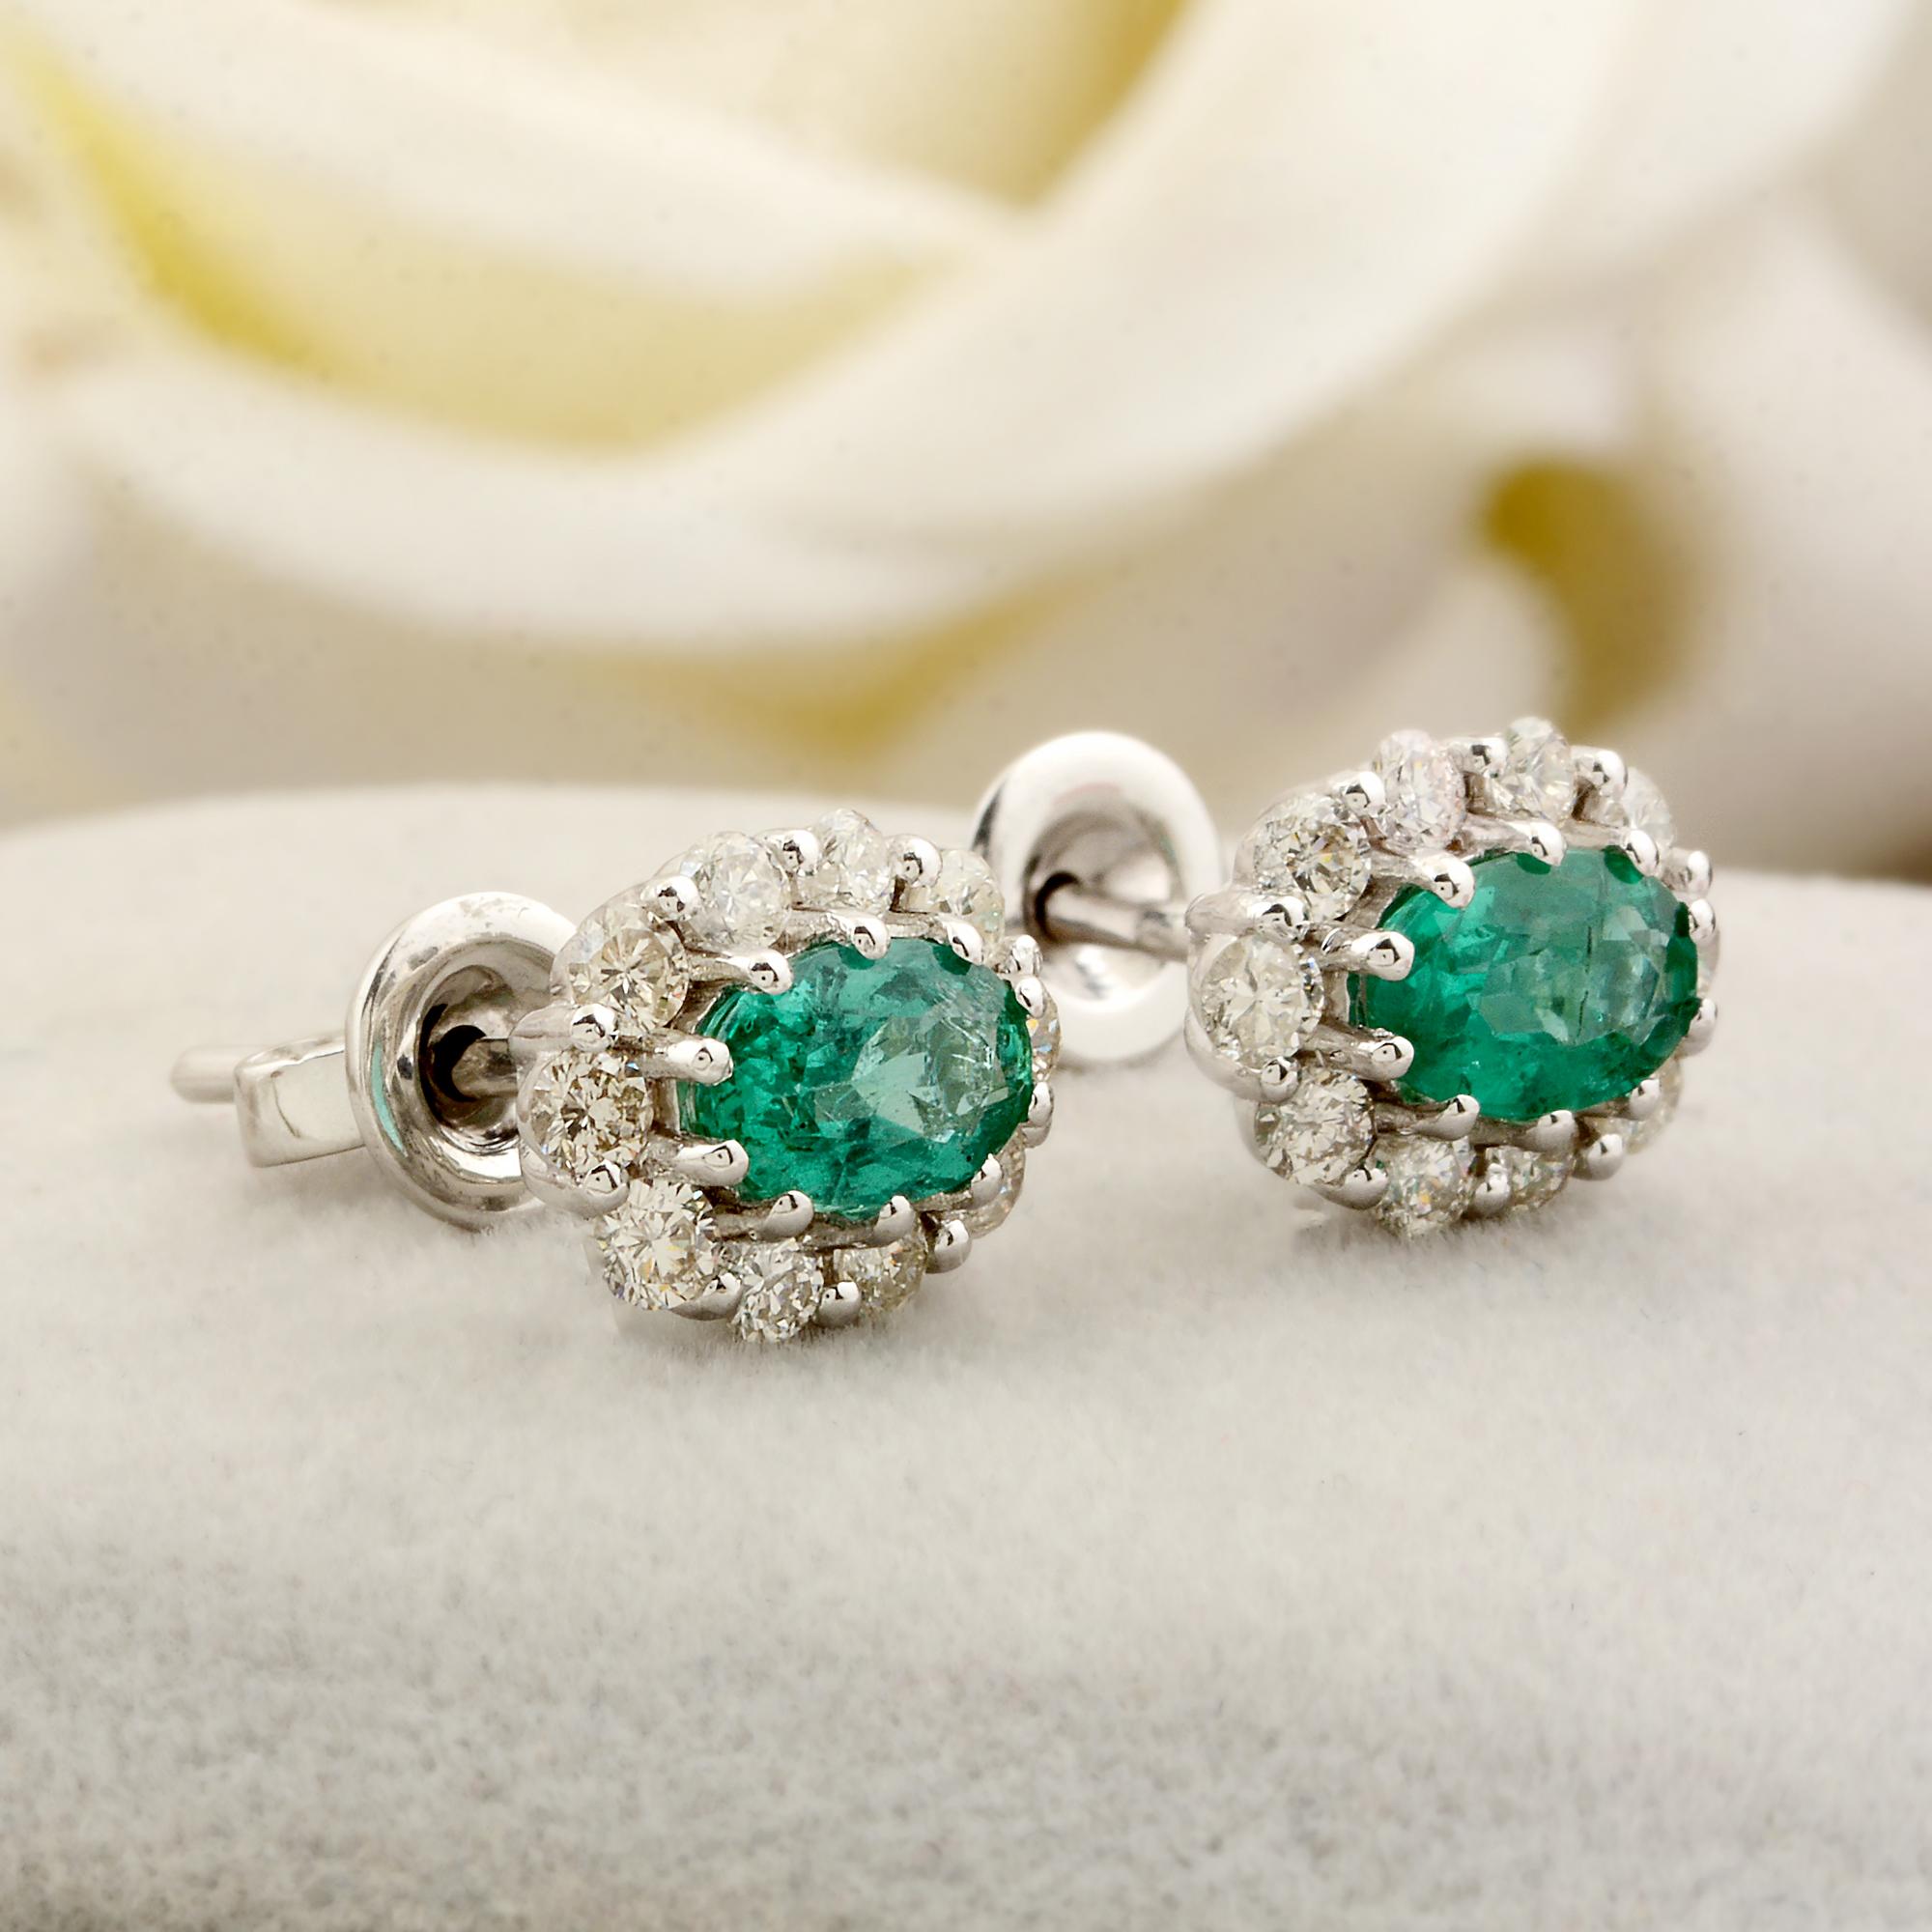 Modern Oval Zambian Emerald Gemstone Stud Earrings Diamond 18 Karat White Gold Jewelry For Sale